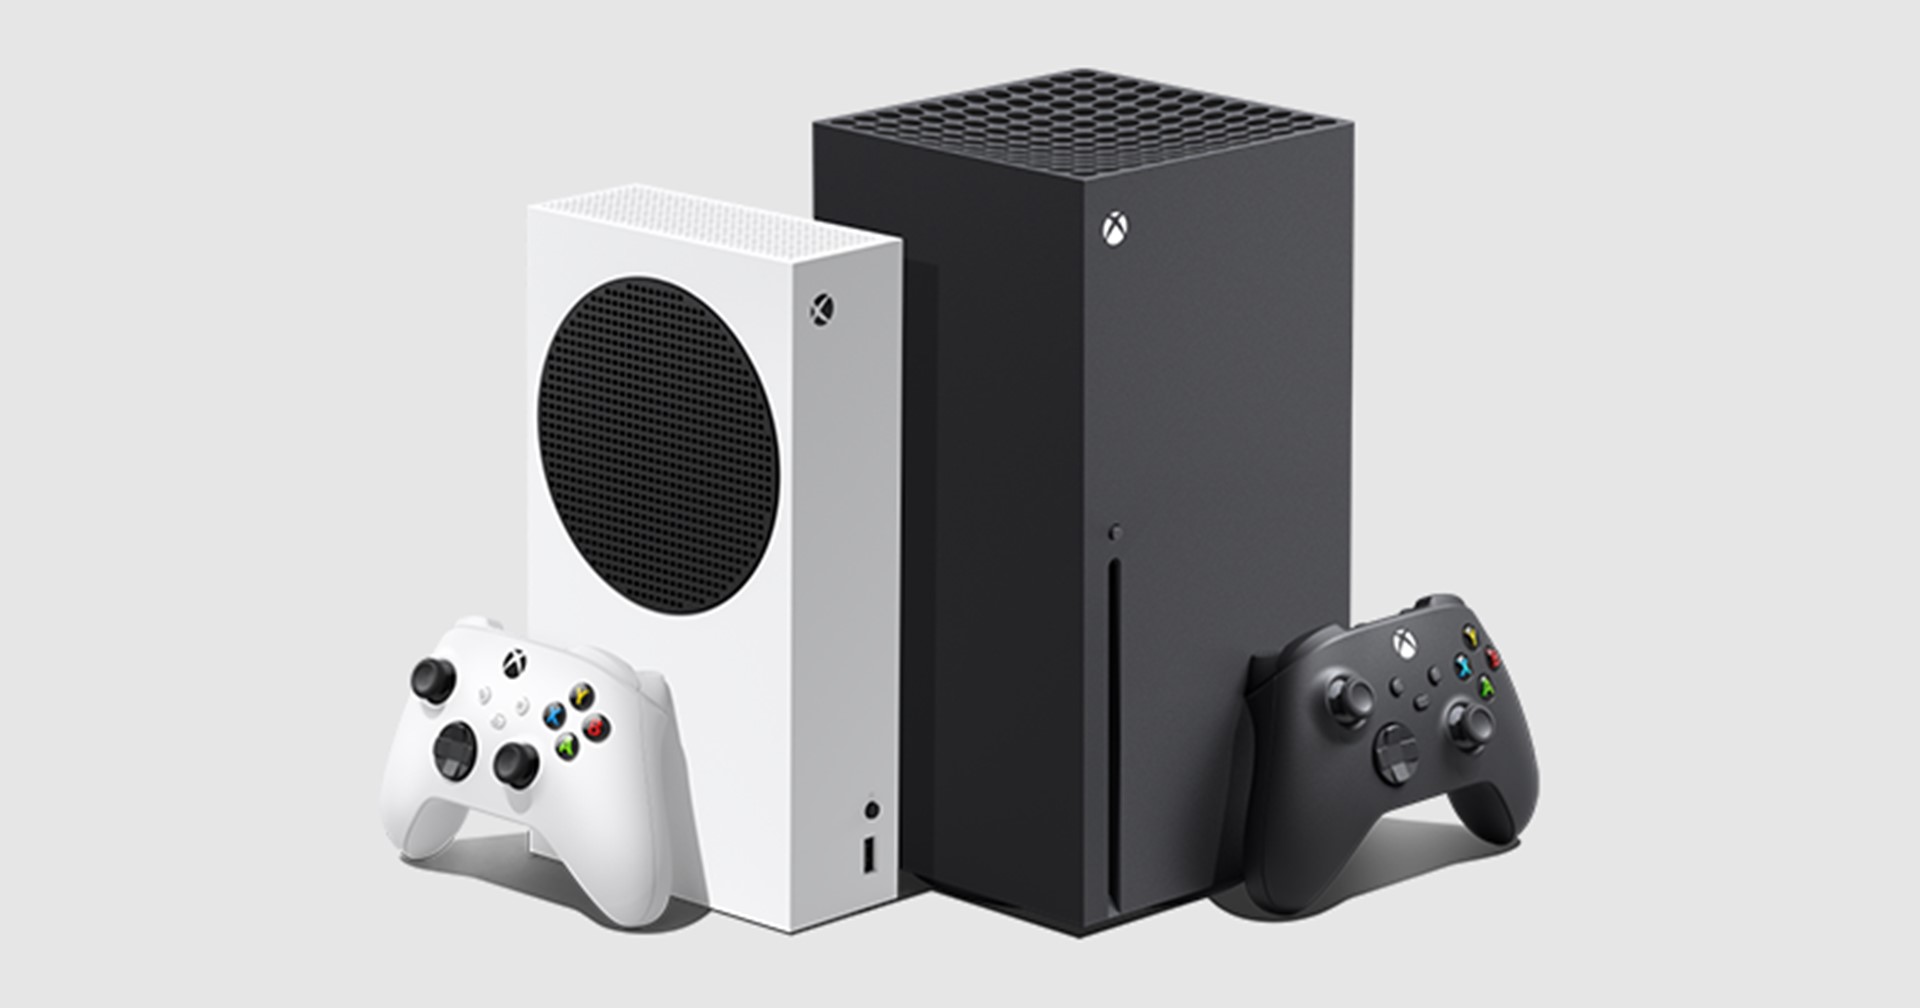 ไมโครซอฟท์ขาดทุน 100-200 เหรียญ ในการขาย Xbox Series X,S